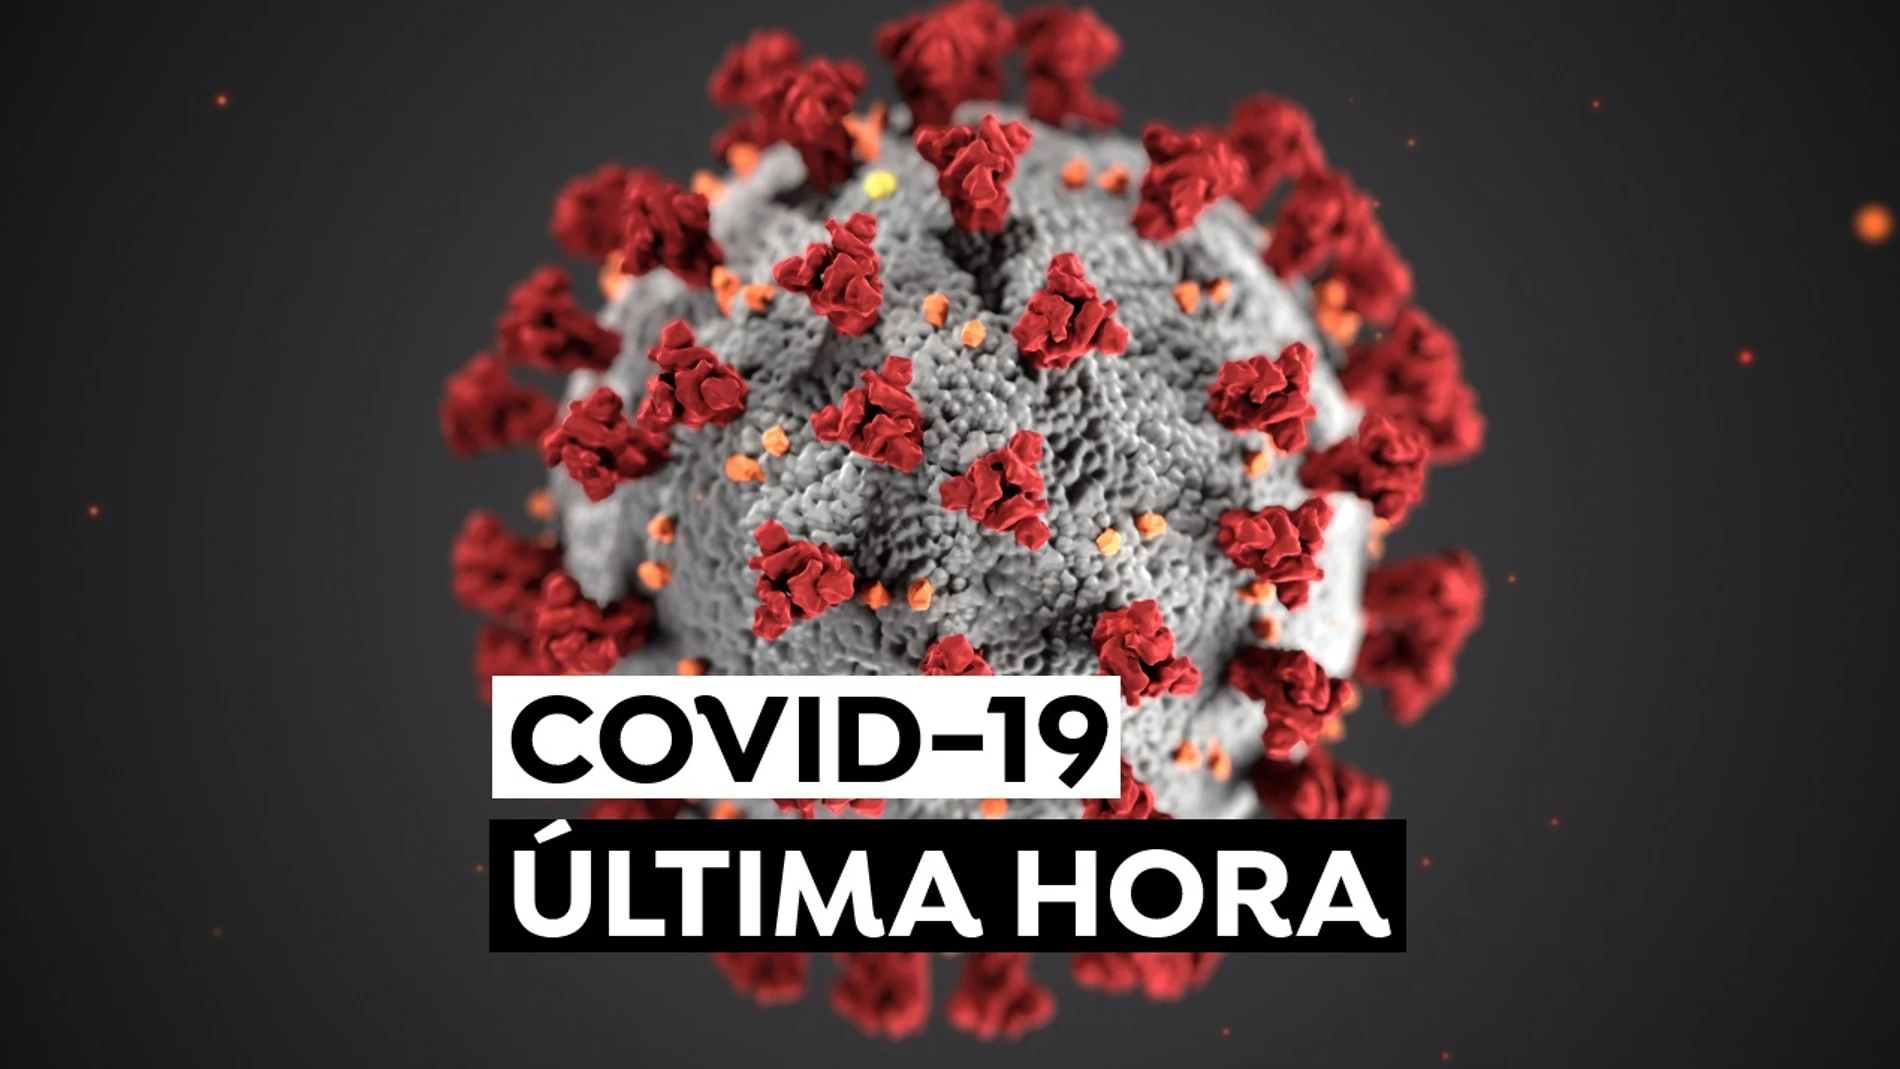 Coronavirus España: Contagios, nueva variante y restricciones en Navidad, última hora en directo